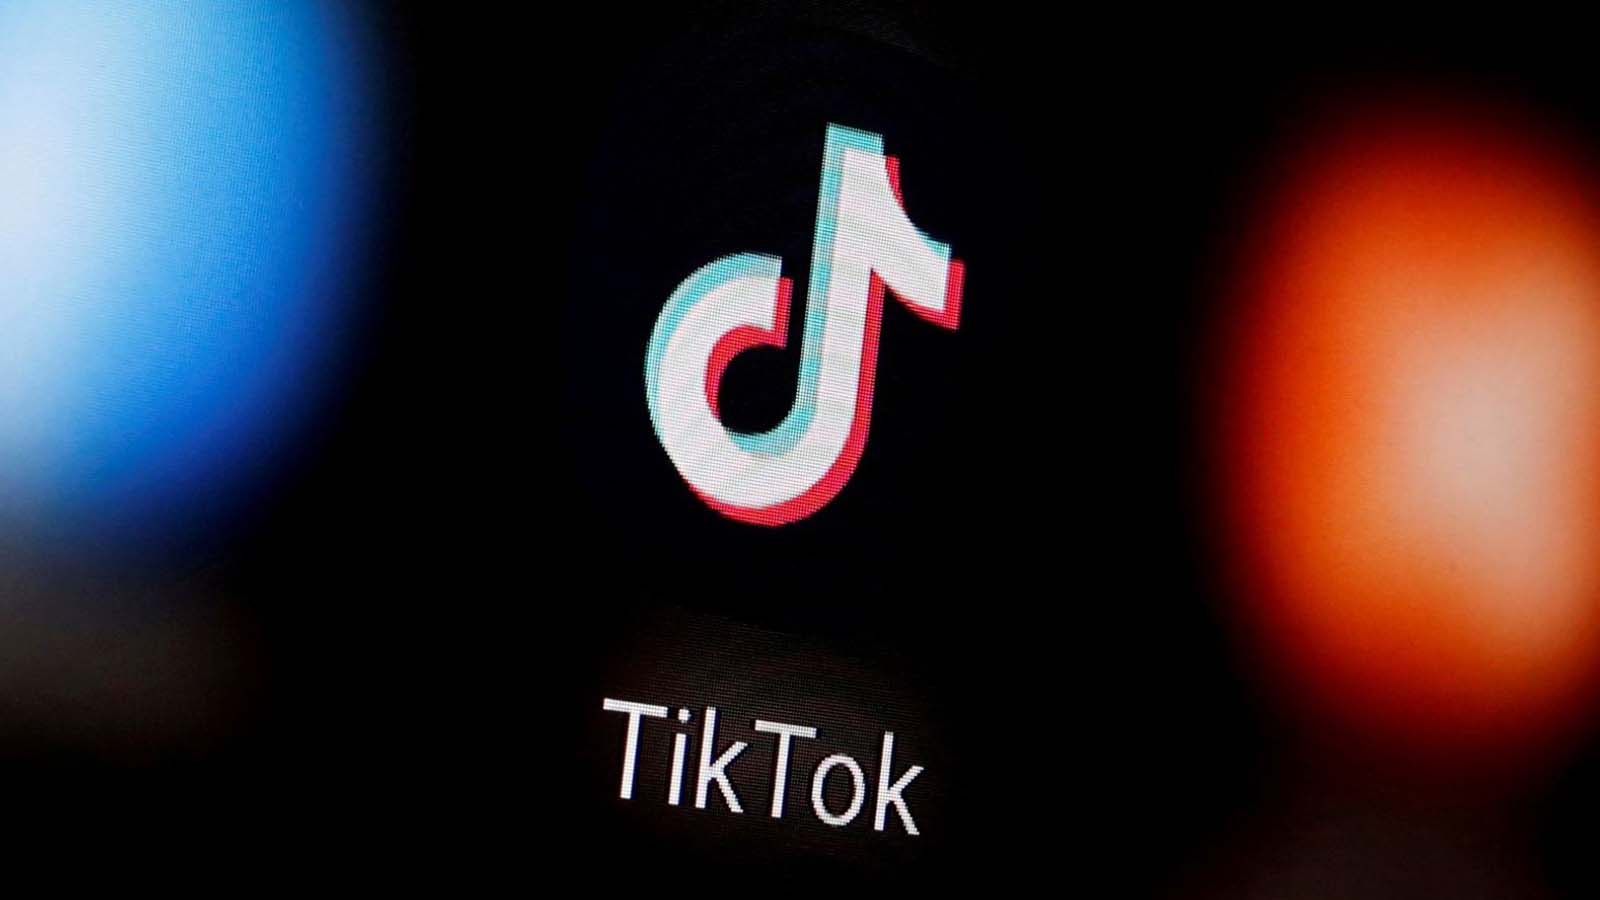 La trasformazione di TikTok da app di video brevi a piattaforma multimediale